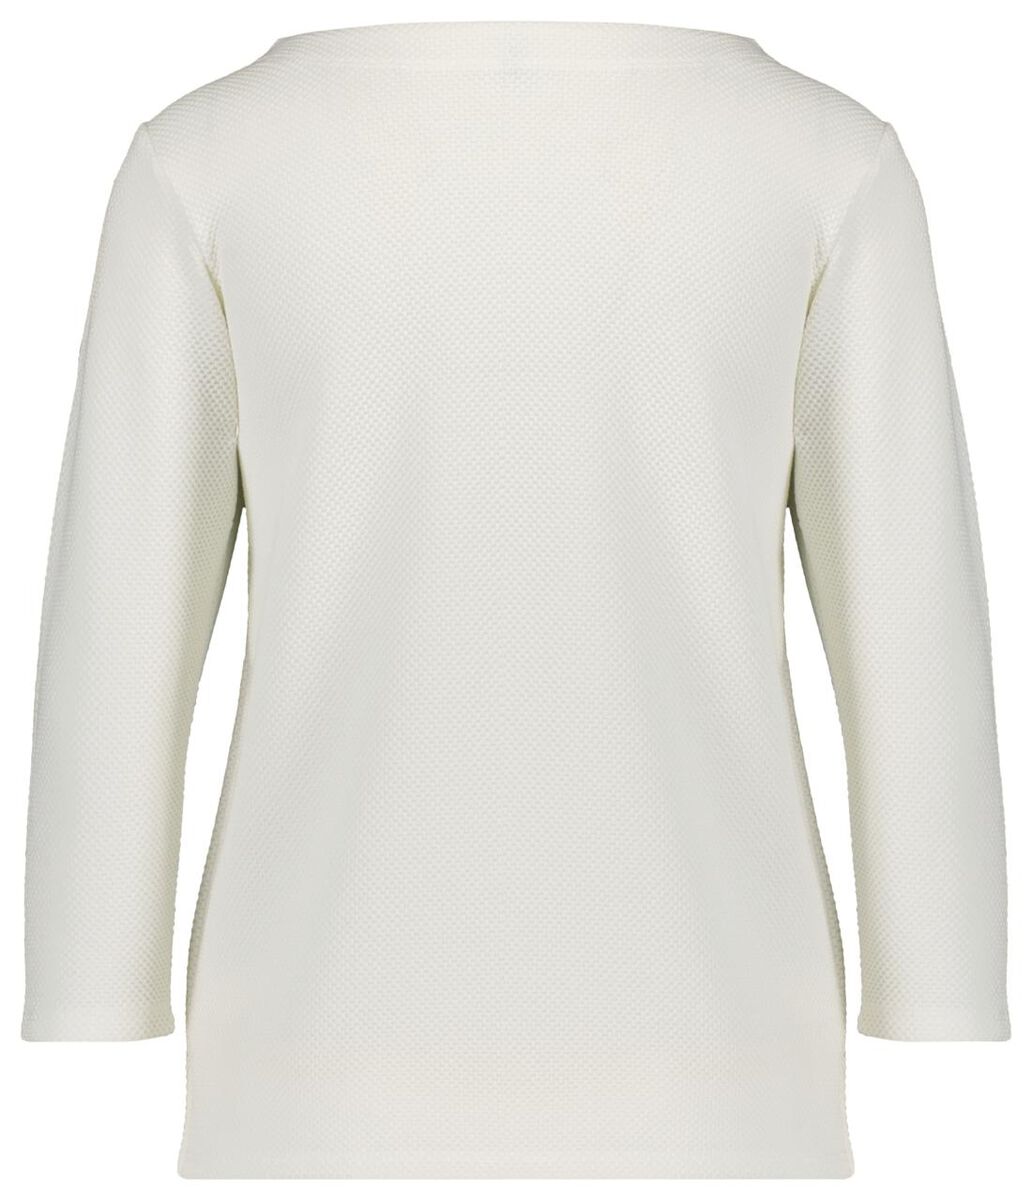 t-shirt femme relief blanc cassé L - 36289659 - HEMA